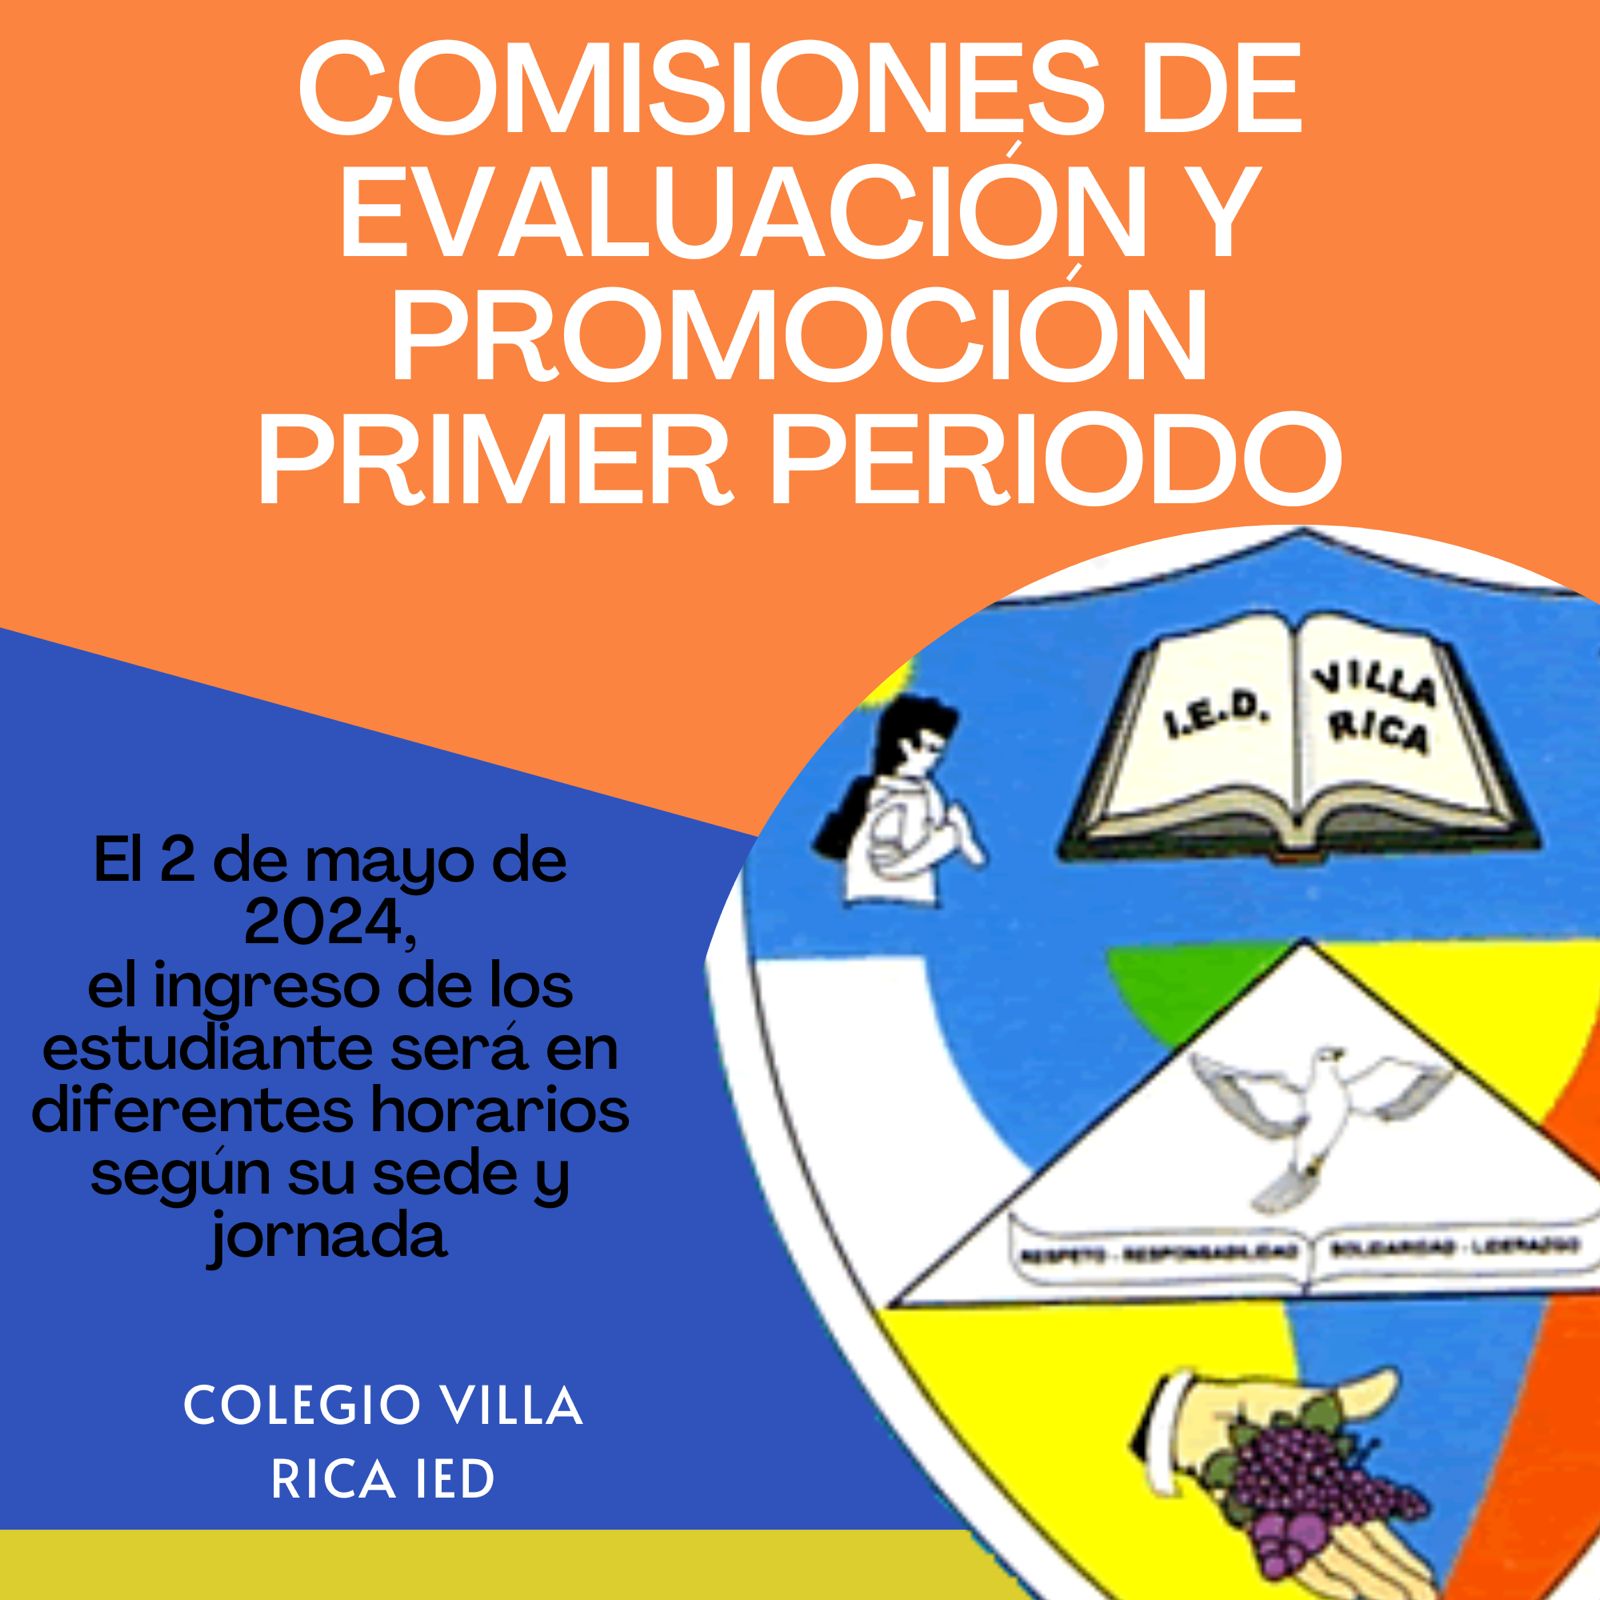 Imagen con escudo informando las comisiones